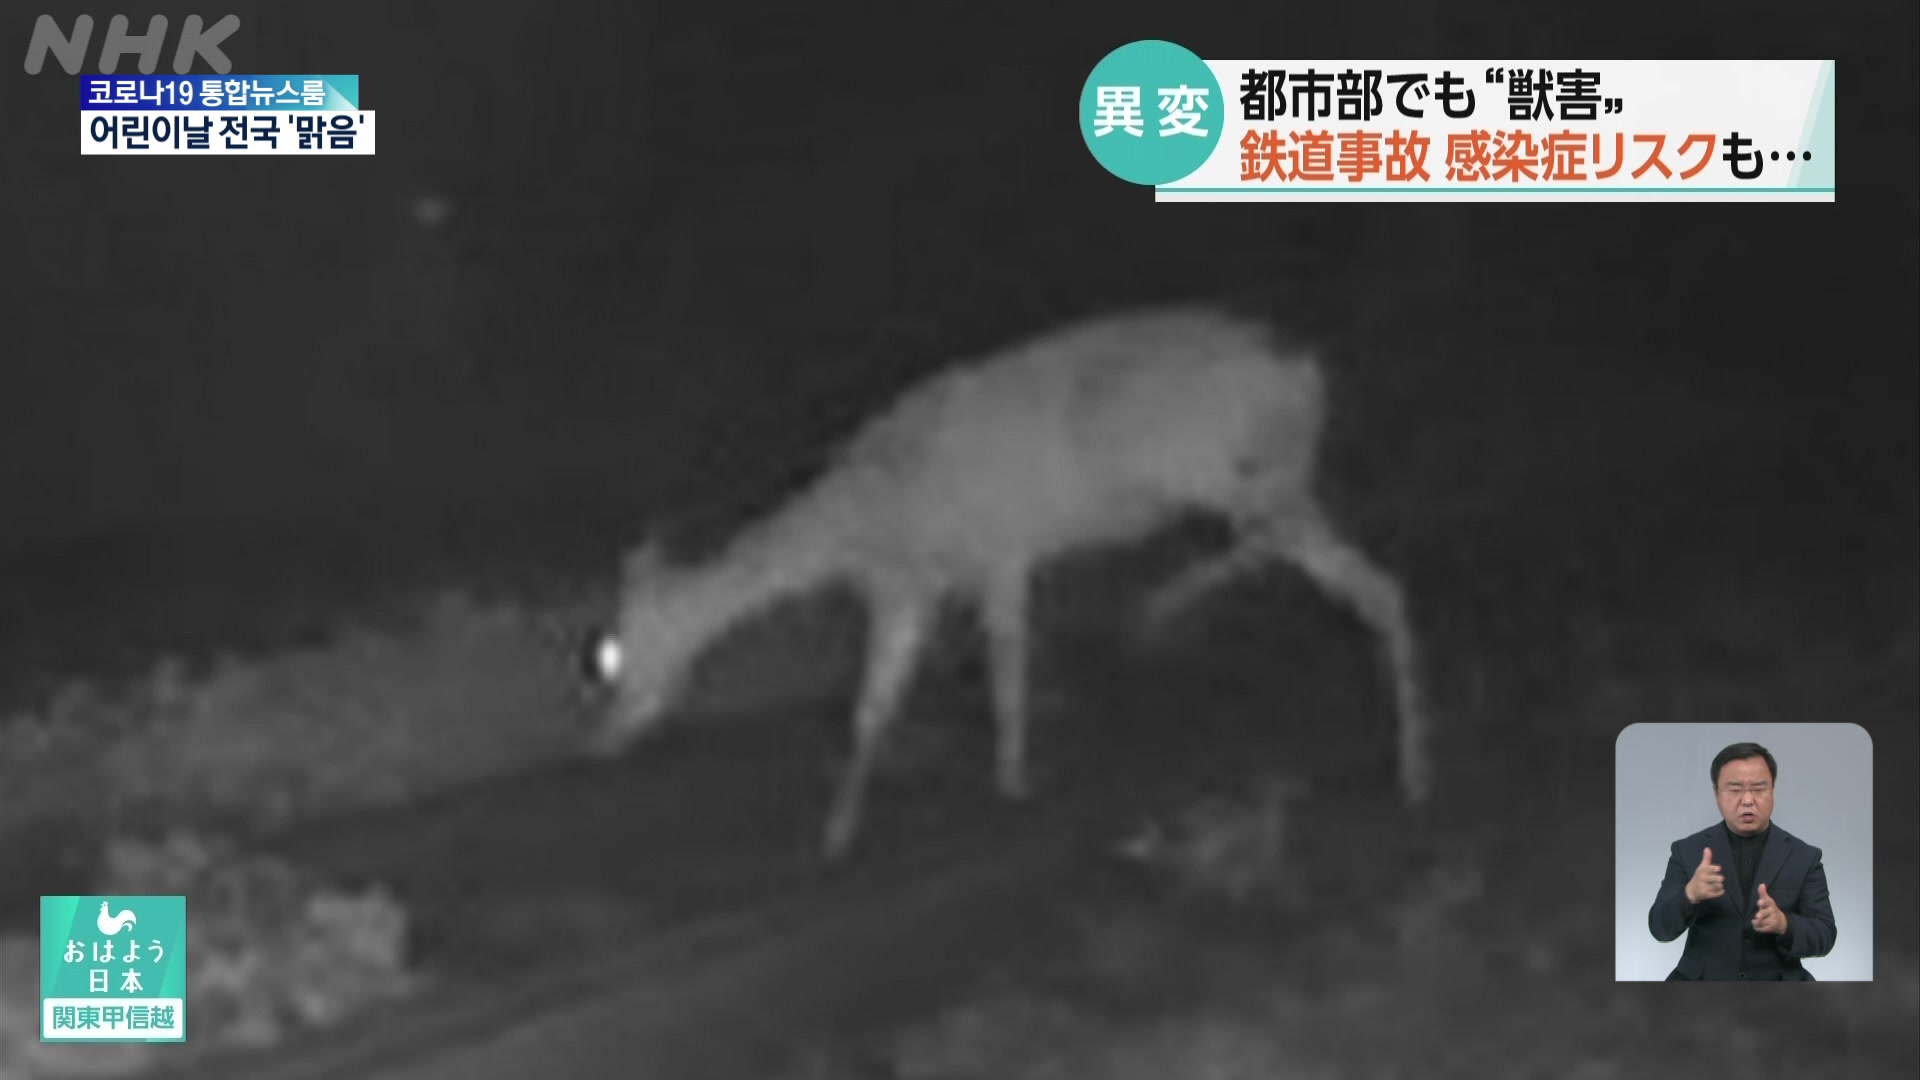 일본, 도심지역의 잇따른 ‘야생동물 주의보’